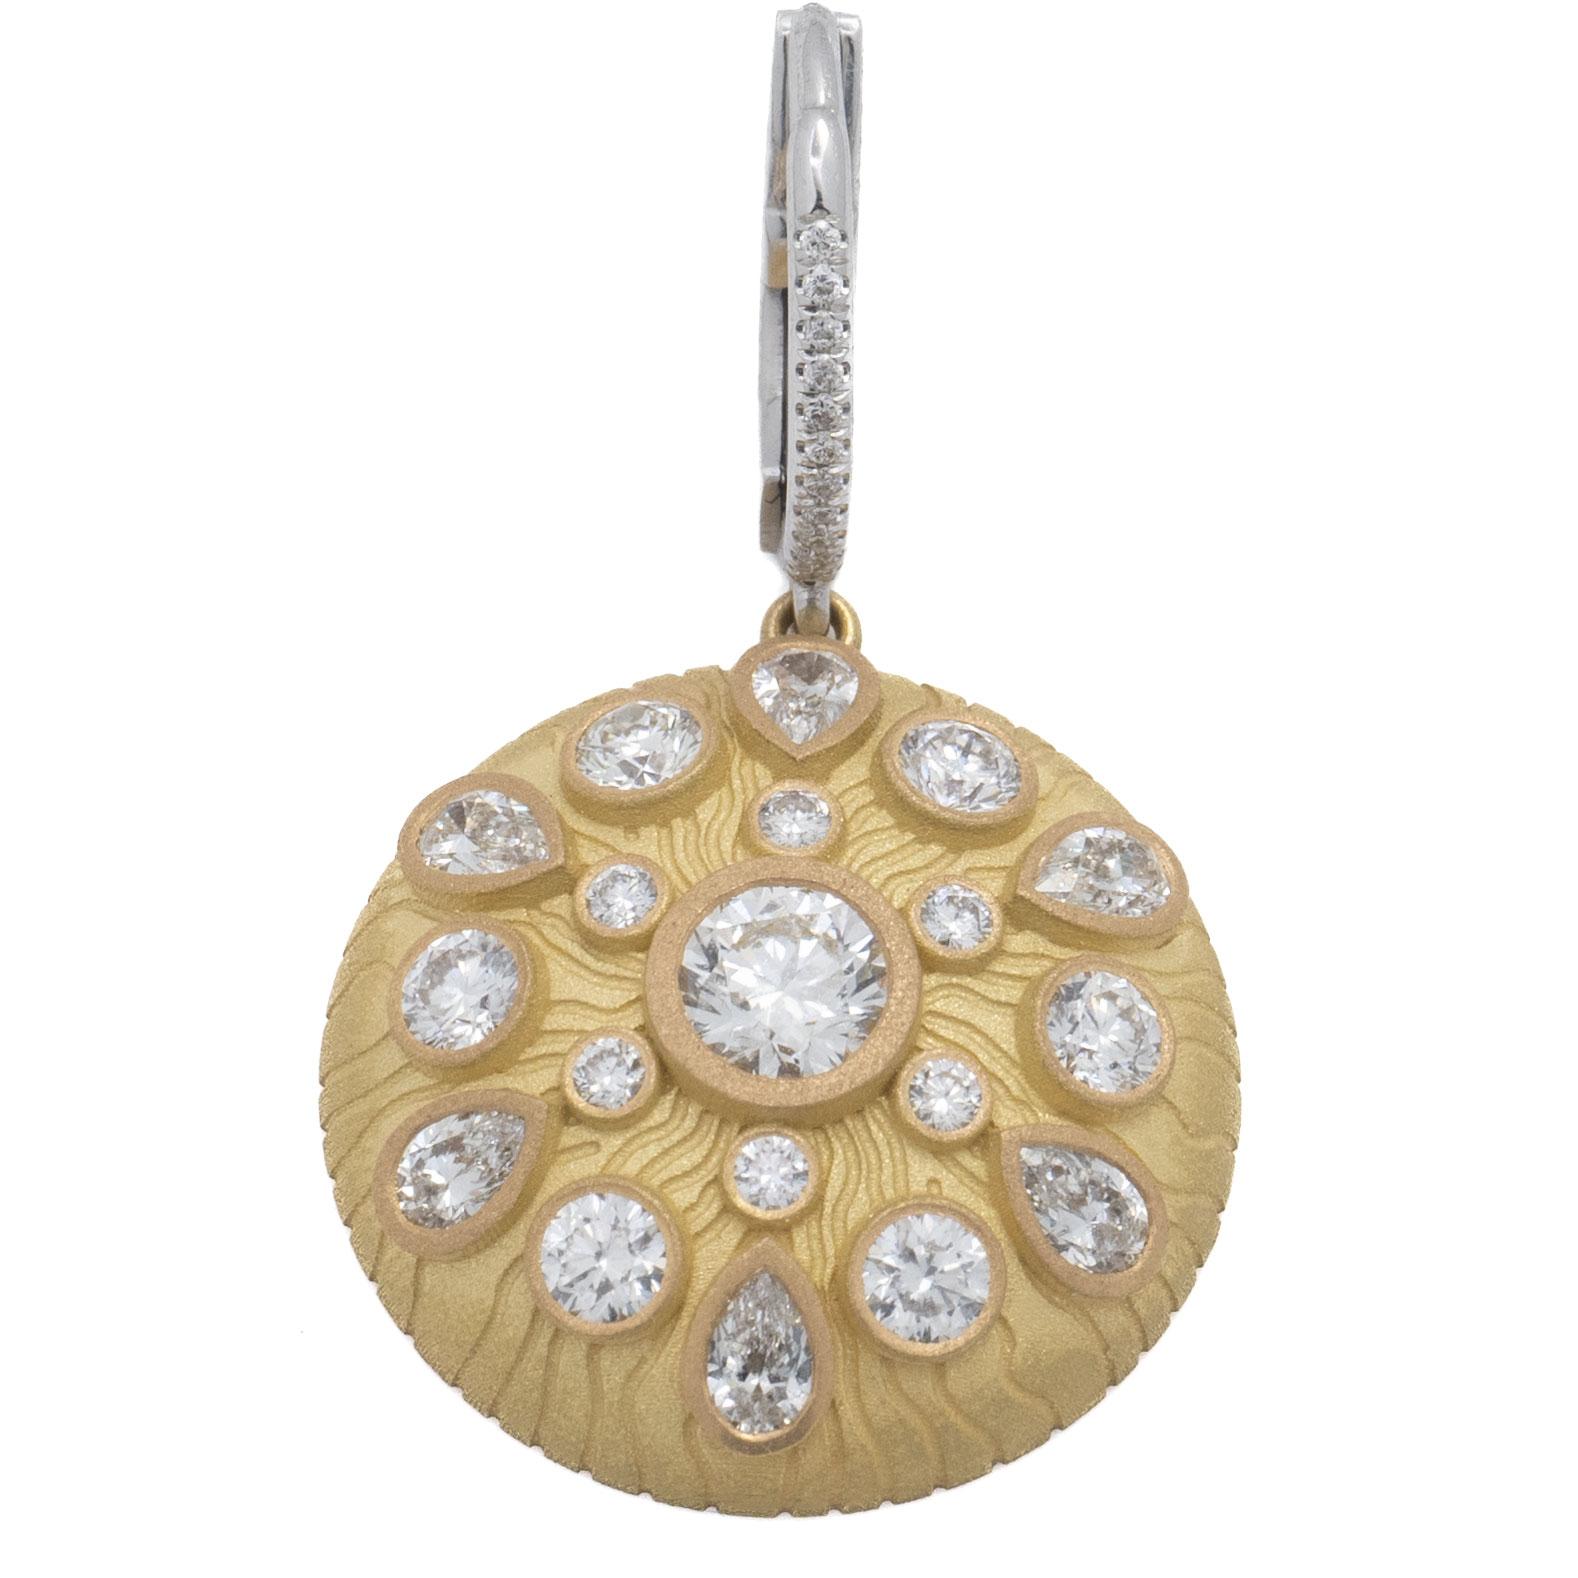 Medaillon-Ohrringe aus 18k Gelbgold und 18k Weißgold
Mittelrunde Steine sind GIA-zertifiziert:

0,50ct G VS2 Runde Form Diamant GIA#5222778743
0,51ct G VS2 Runde Form Diamant GIA#2446824820

Gesamtkaratgewicht der kleineren runden Steine: